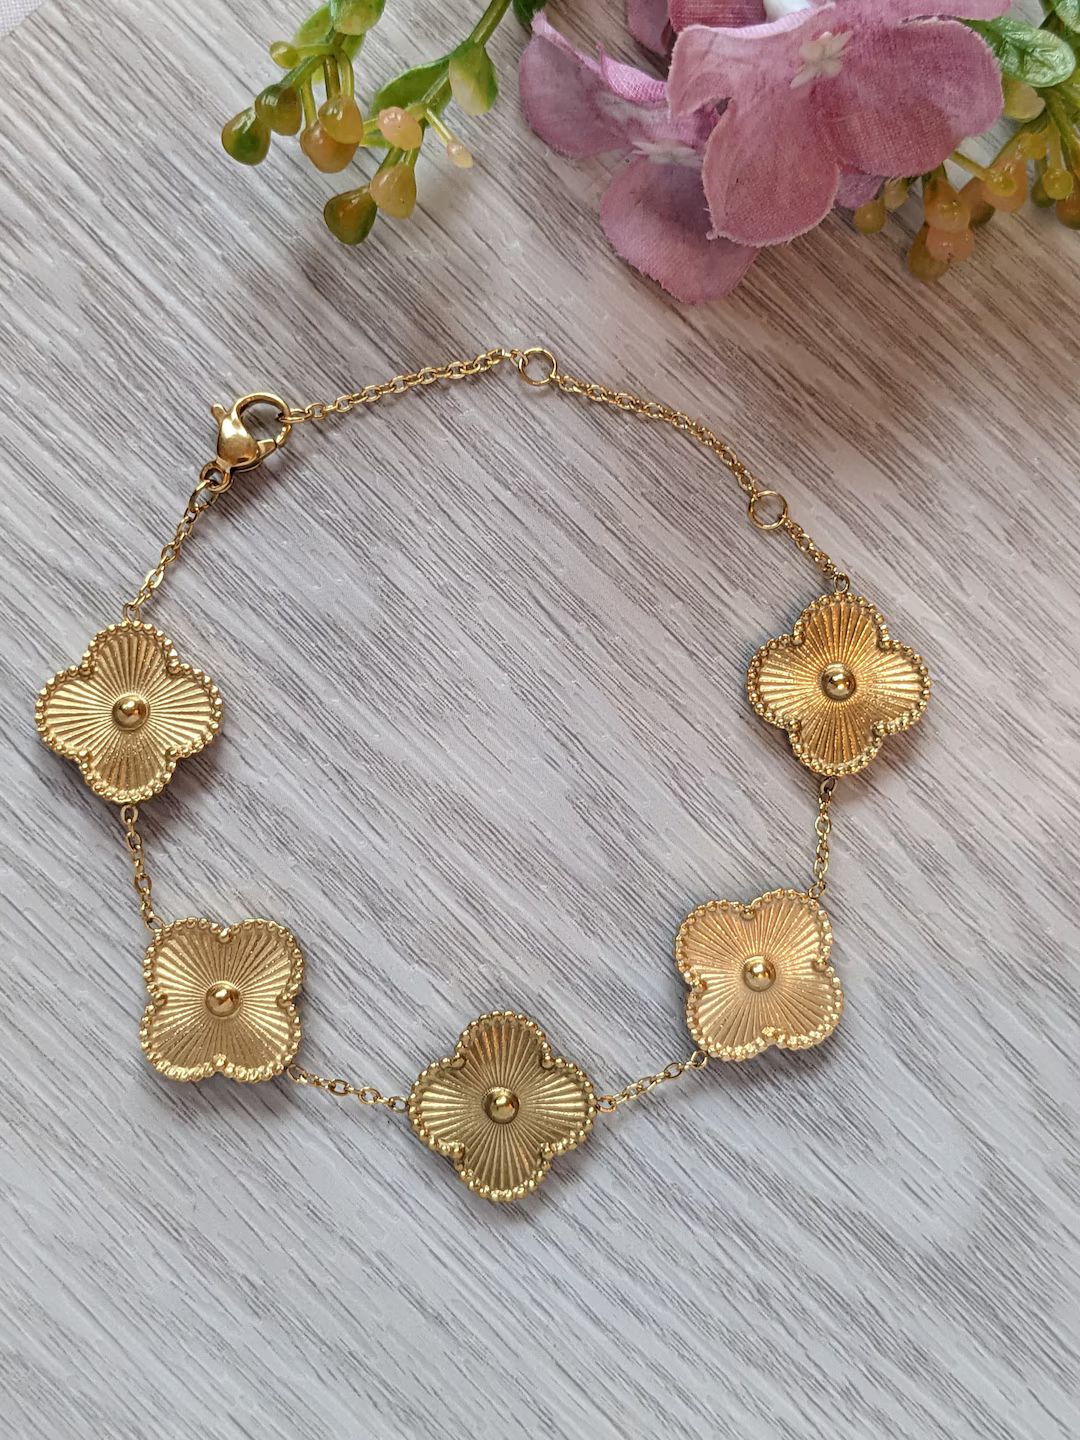 18K Gold Plated Flower Leaf Bracelet Bangle Jewellery, Gift for Her, Birthday Gift, - Etsy UK | Etsy (UK)